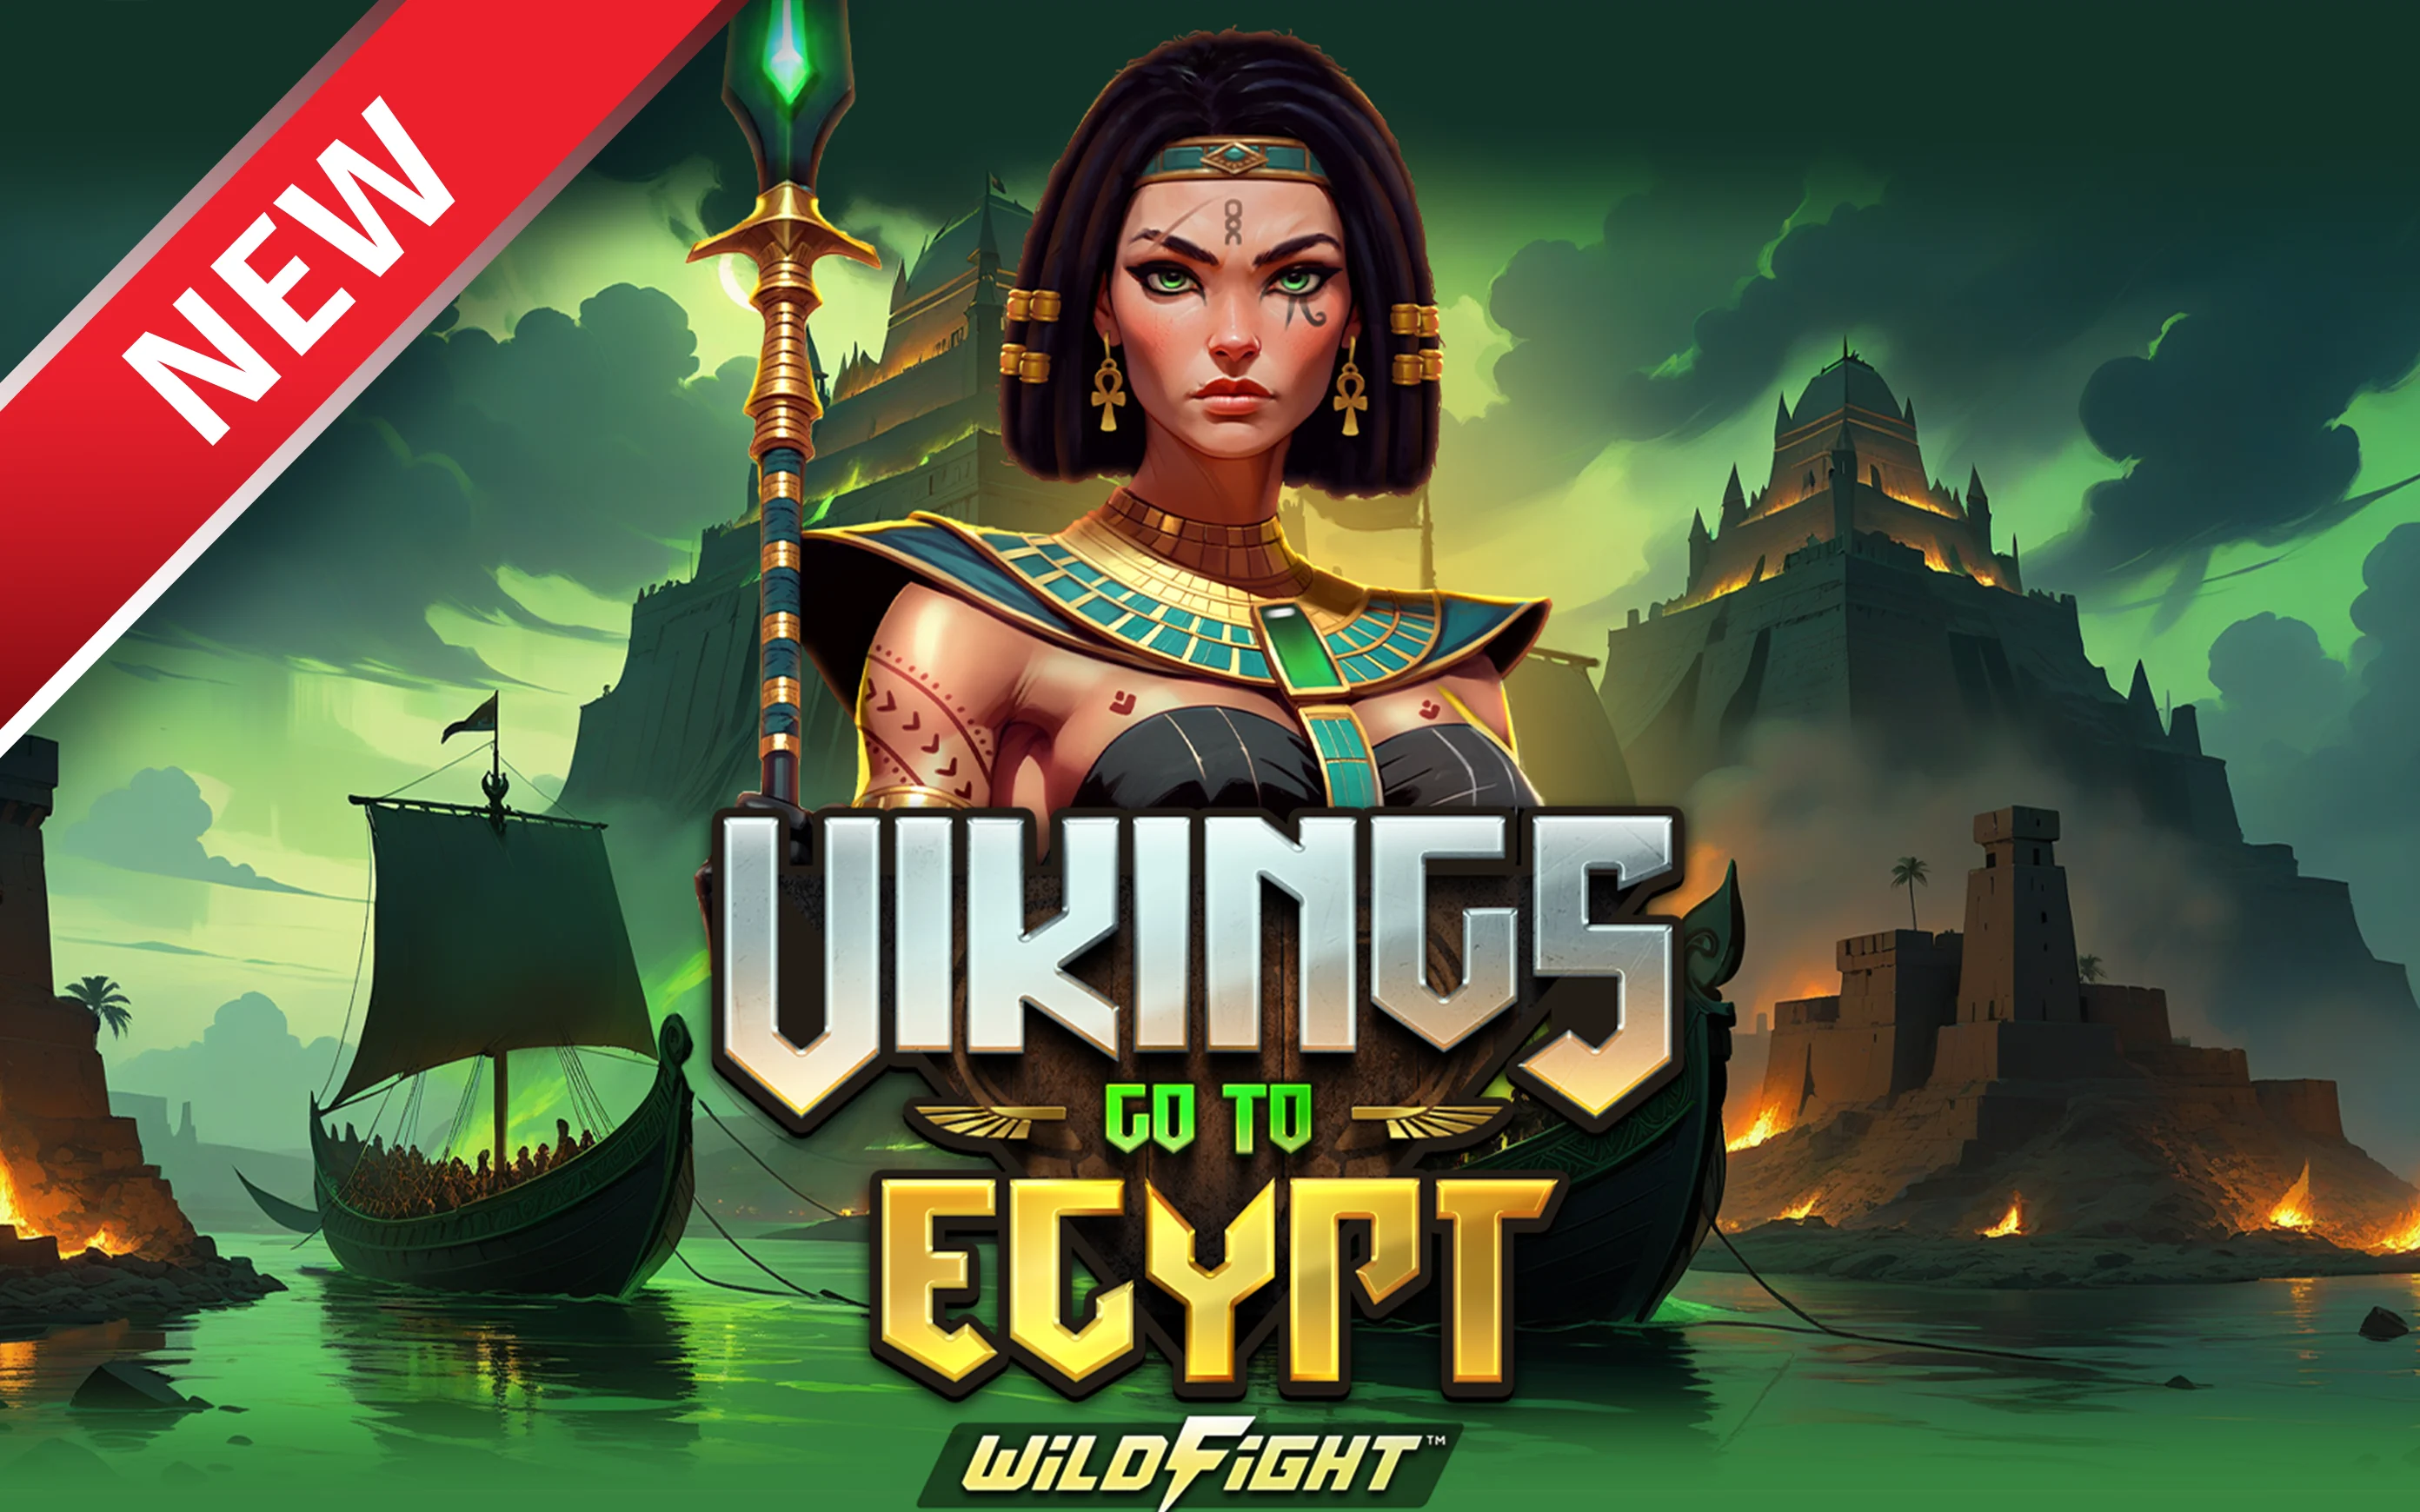 Chơi Vikings Go To Egypt Wild Fight!™ trên sòng bạc trực tuyến Starcasino.be